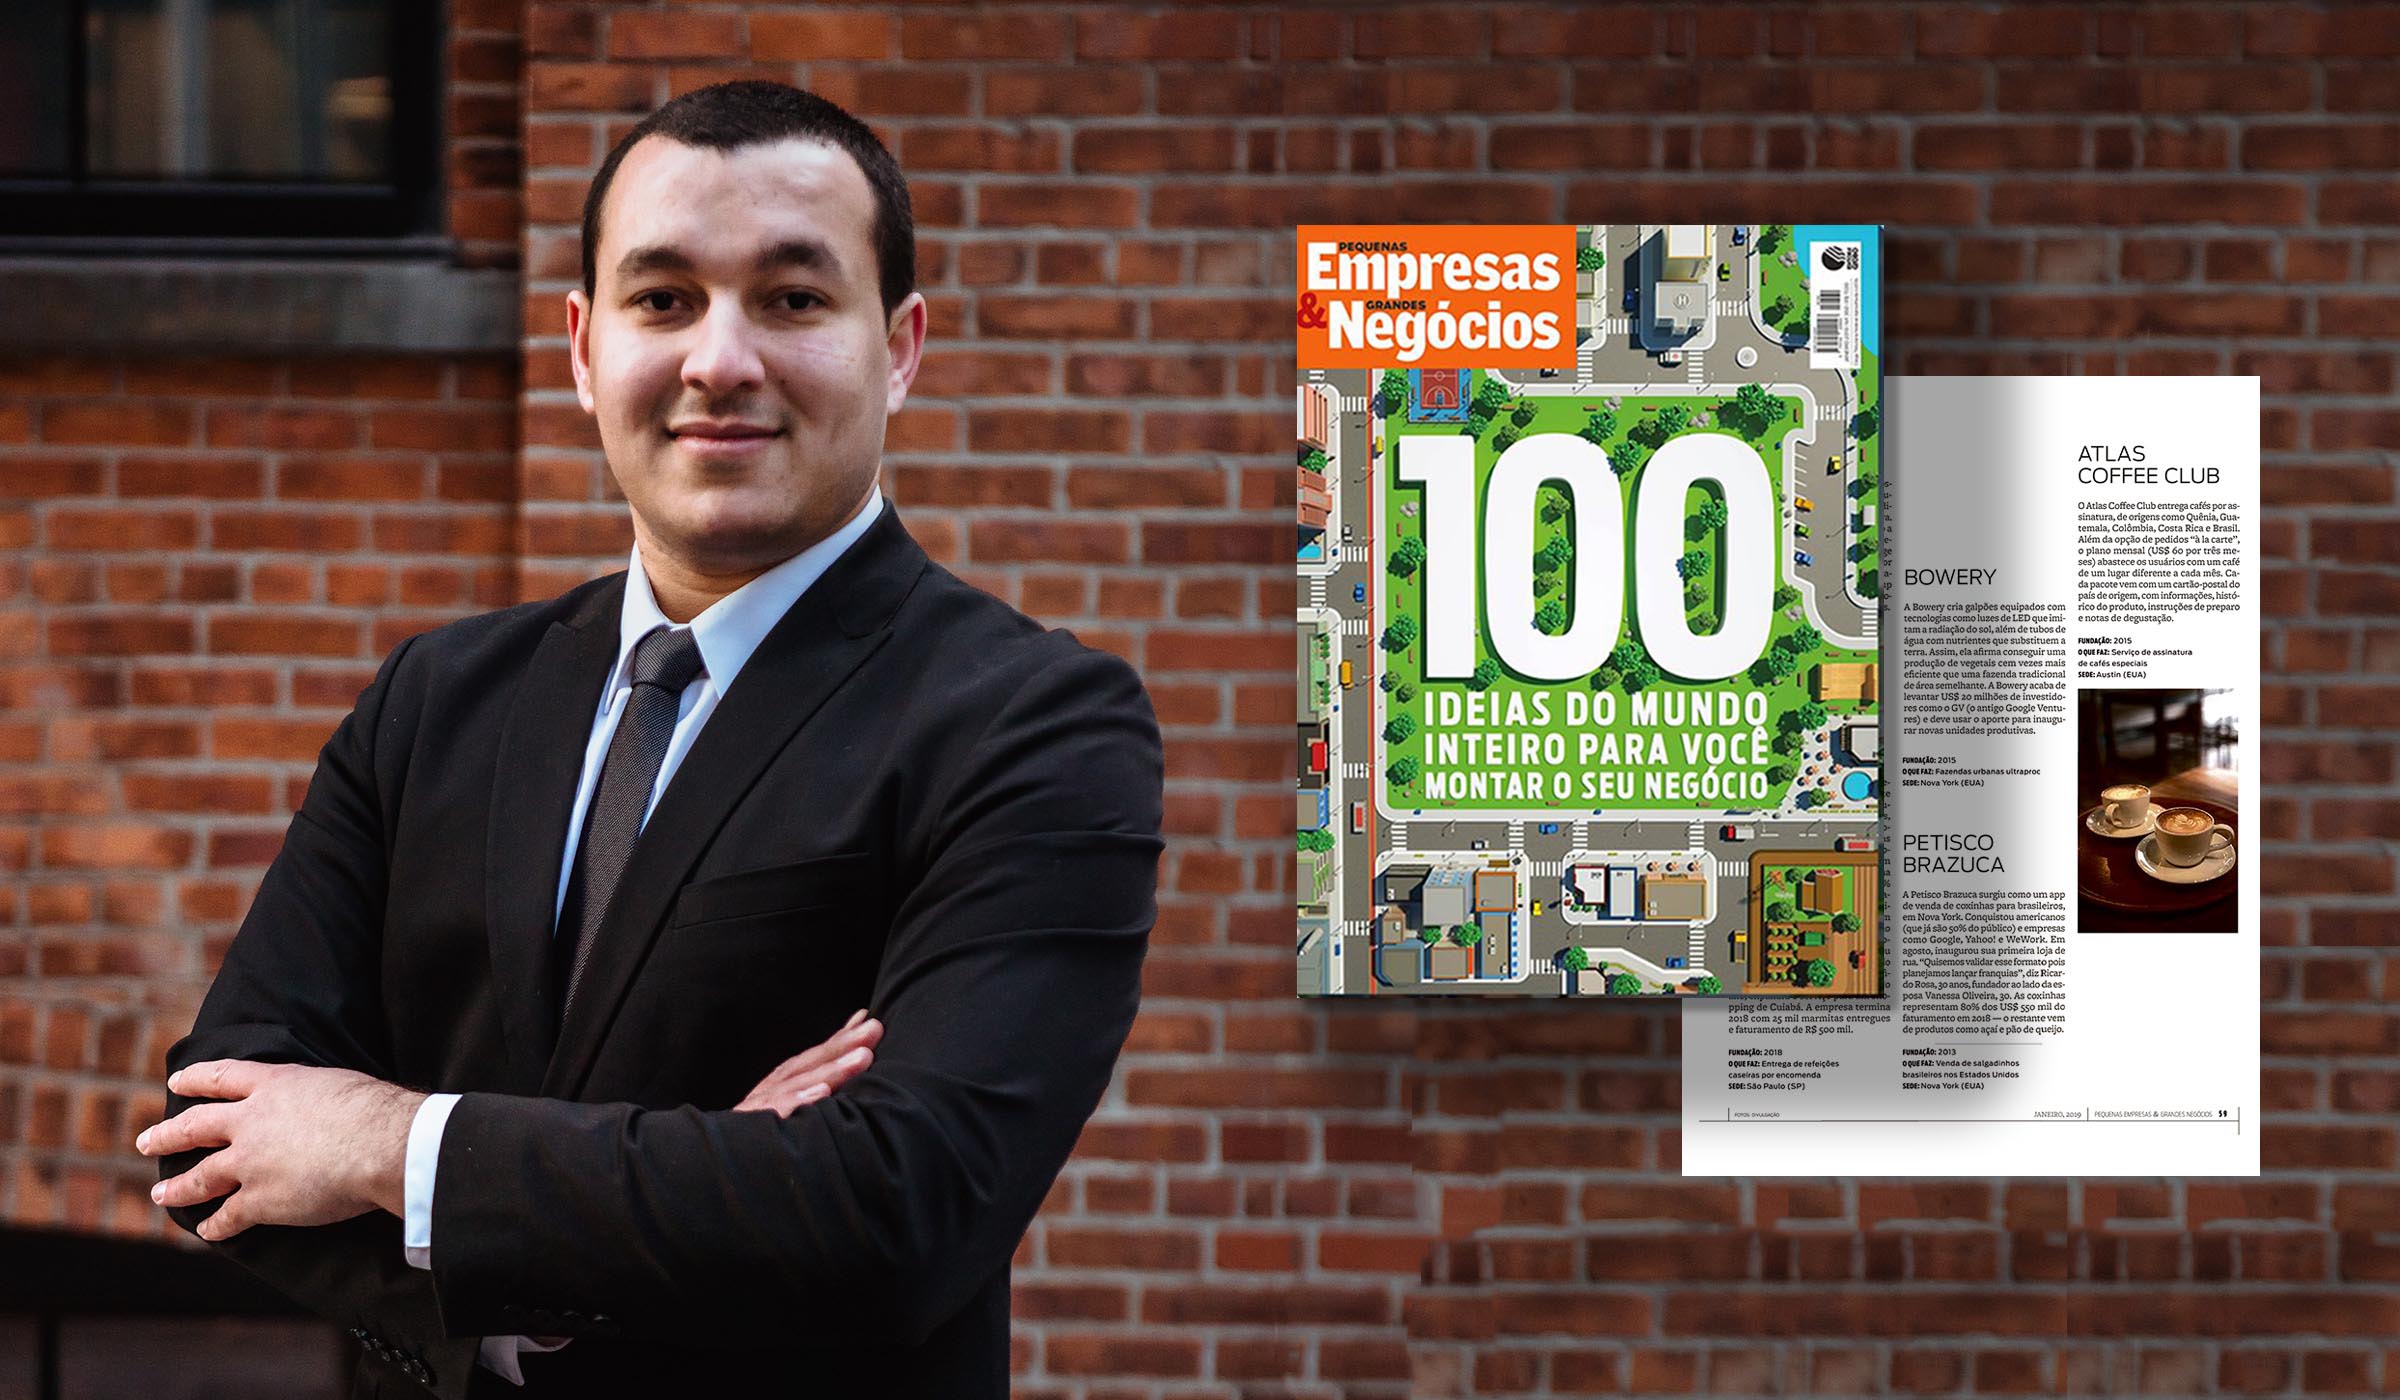 Petisco Brazuca eleita uma das “100 ideias mais inovadoras em 2019” segundo Pequenas & Empresas Grande Negócios